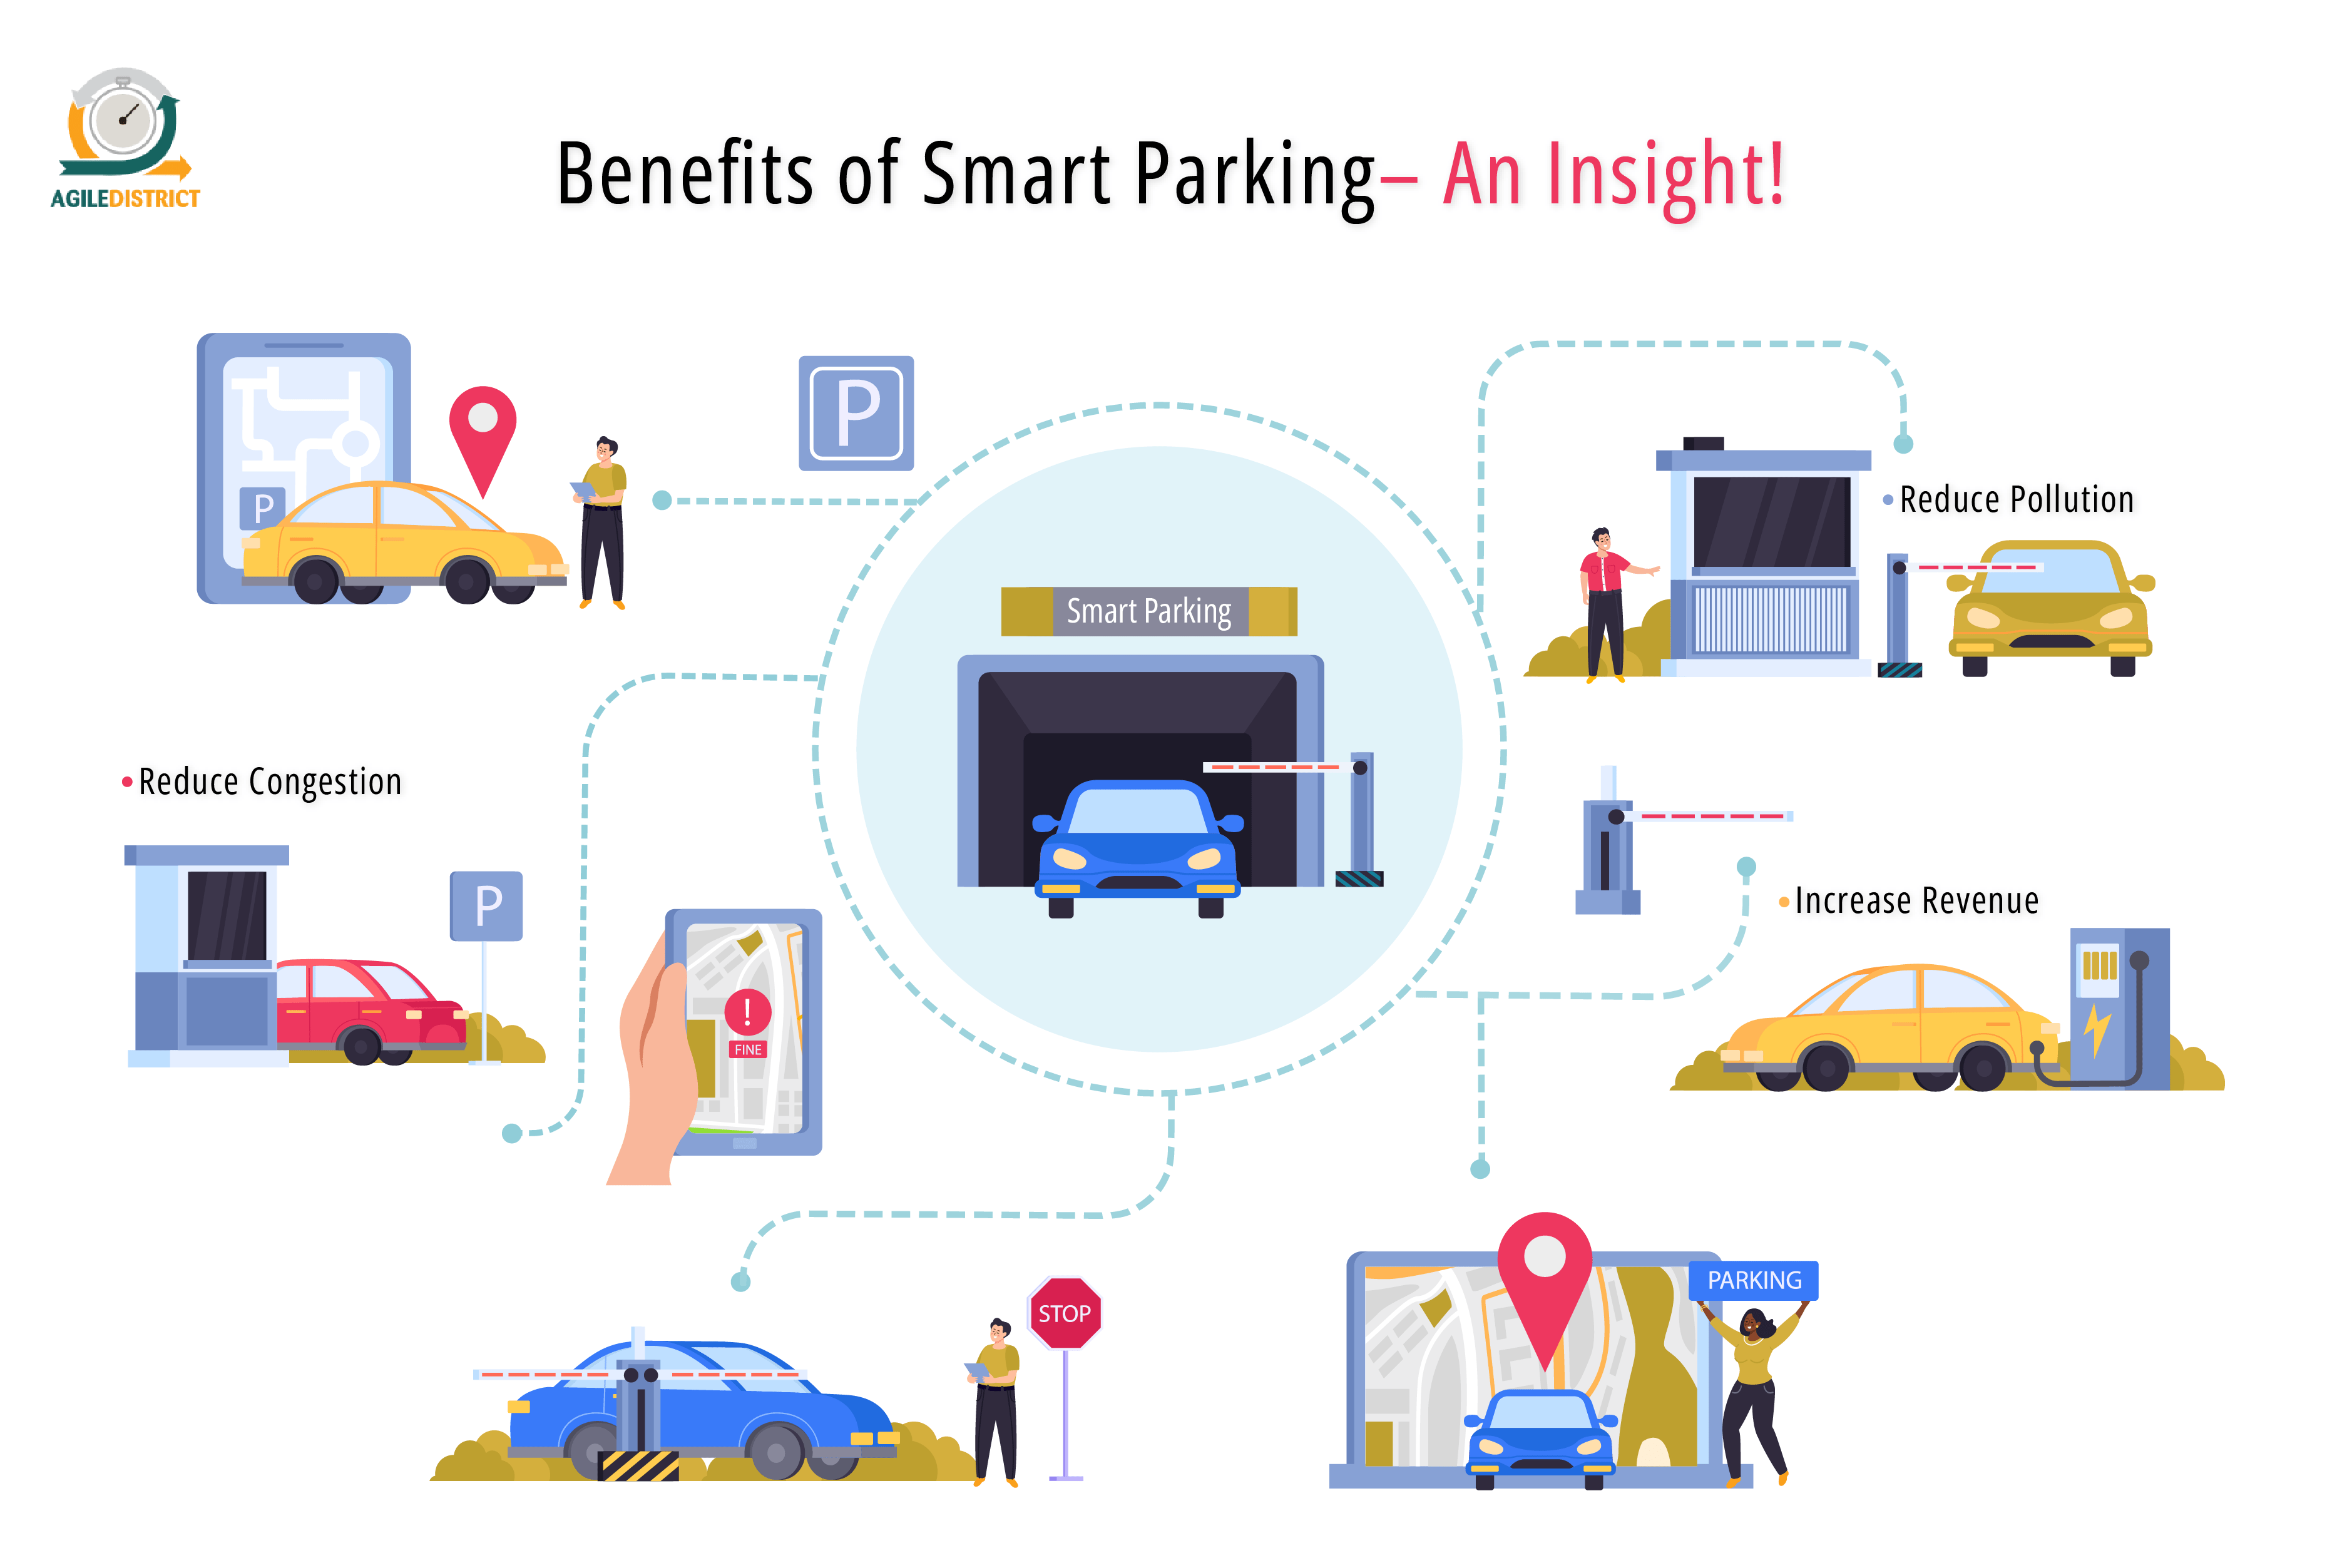 Benefits of Smart Parking - An Insight!